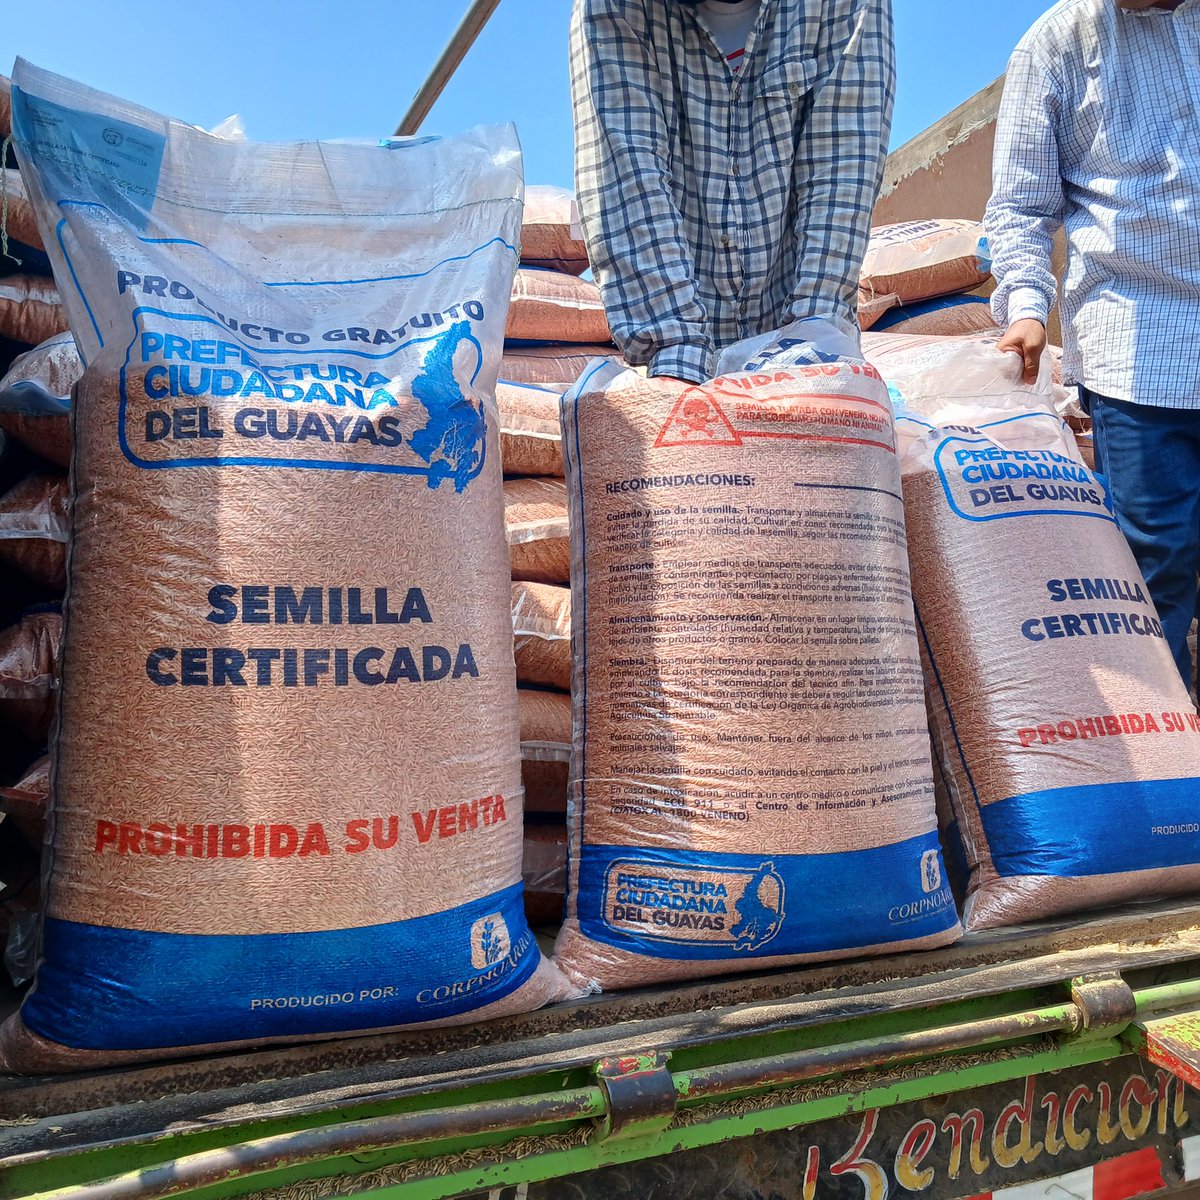 ¡Guayas se mueve hacia la productividad!💪 Realizamos la entrega de 384 sacos de semillas certificadas a 136 productores de arroz, en el cantón Samborondón. De esta manera, promovemos el desarrollo del sector agrícola en la provincia. 🌾 #1AñoDeCambio